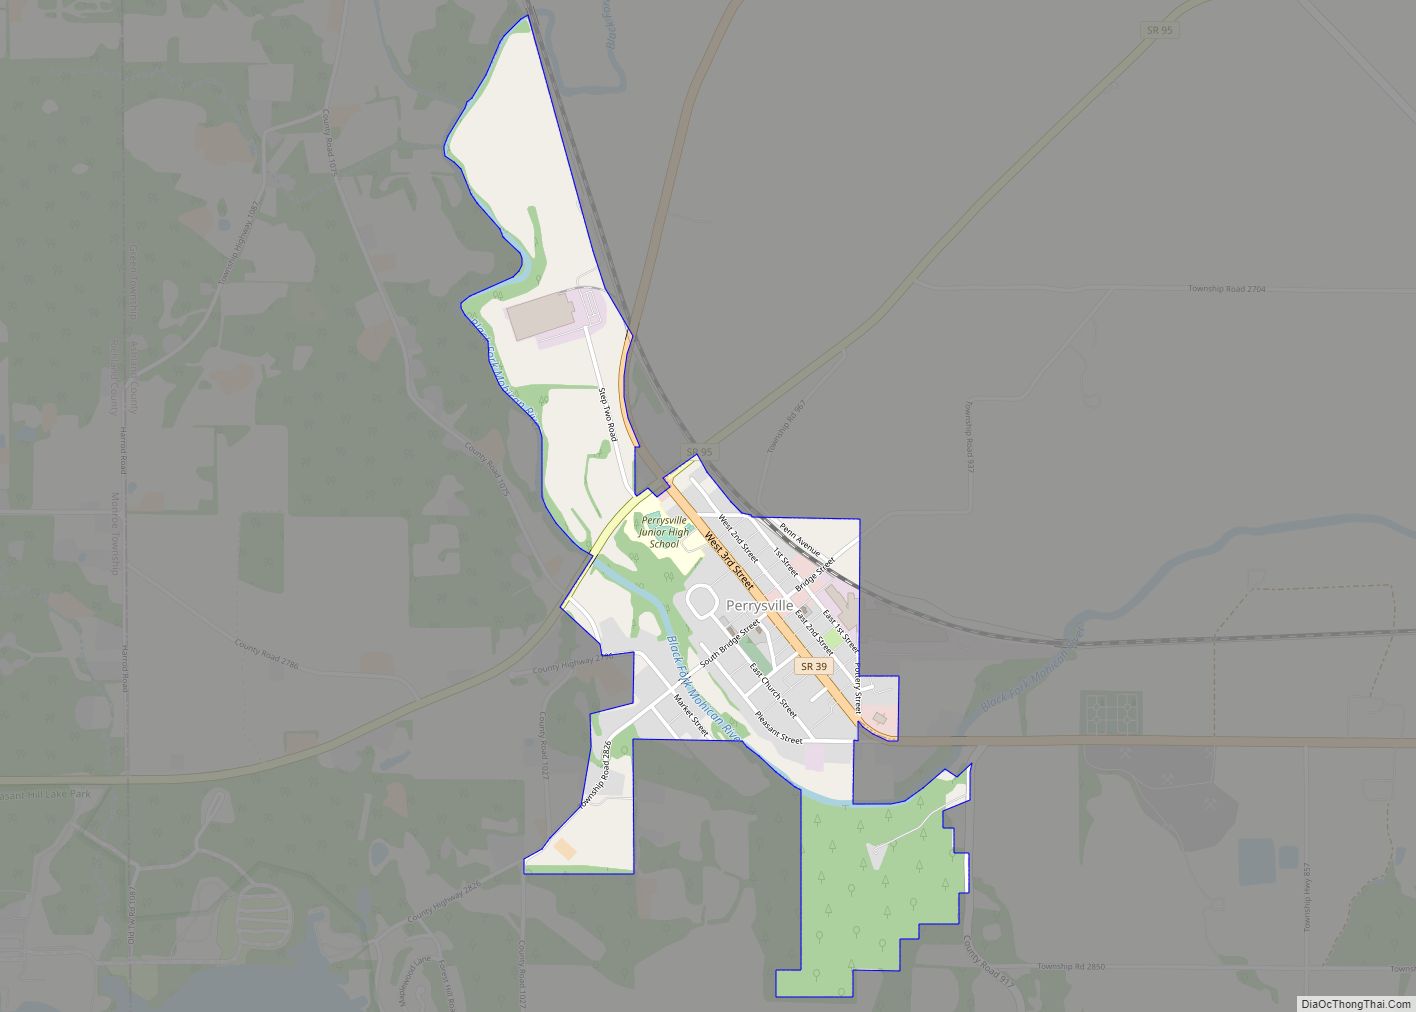 Map of Perrysville village, Ohio